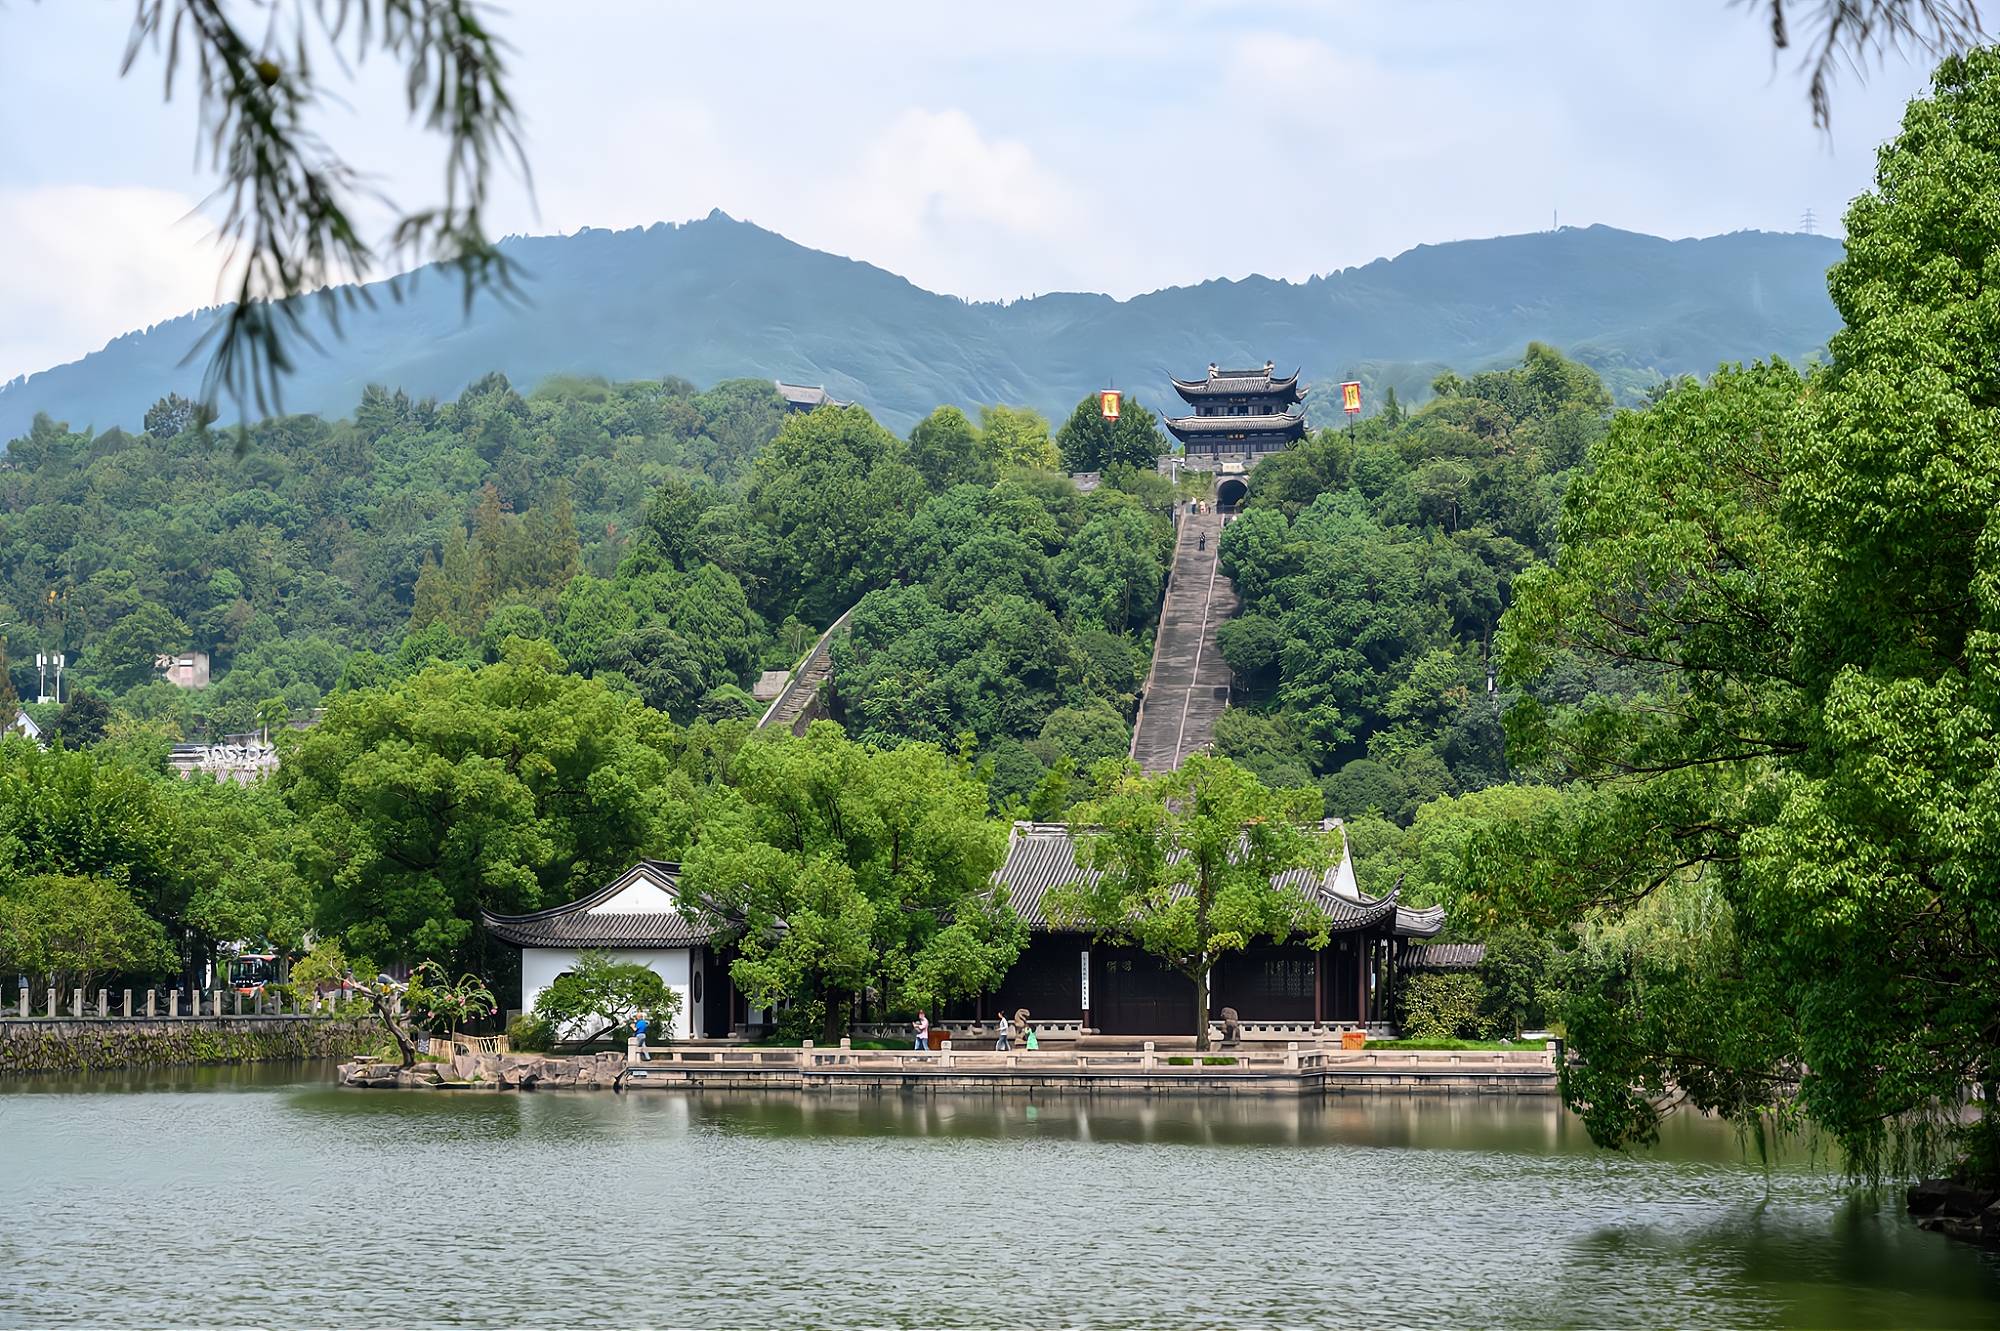 浙江临海的东湖,景色可媲美杭州西湖,被誉为"台州园林